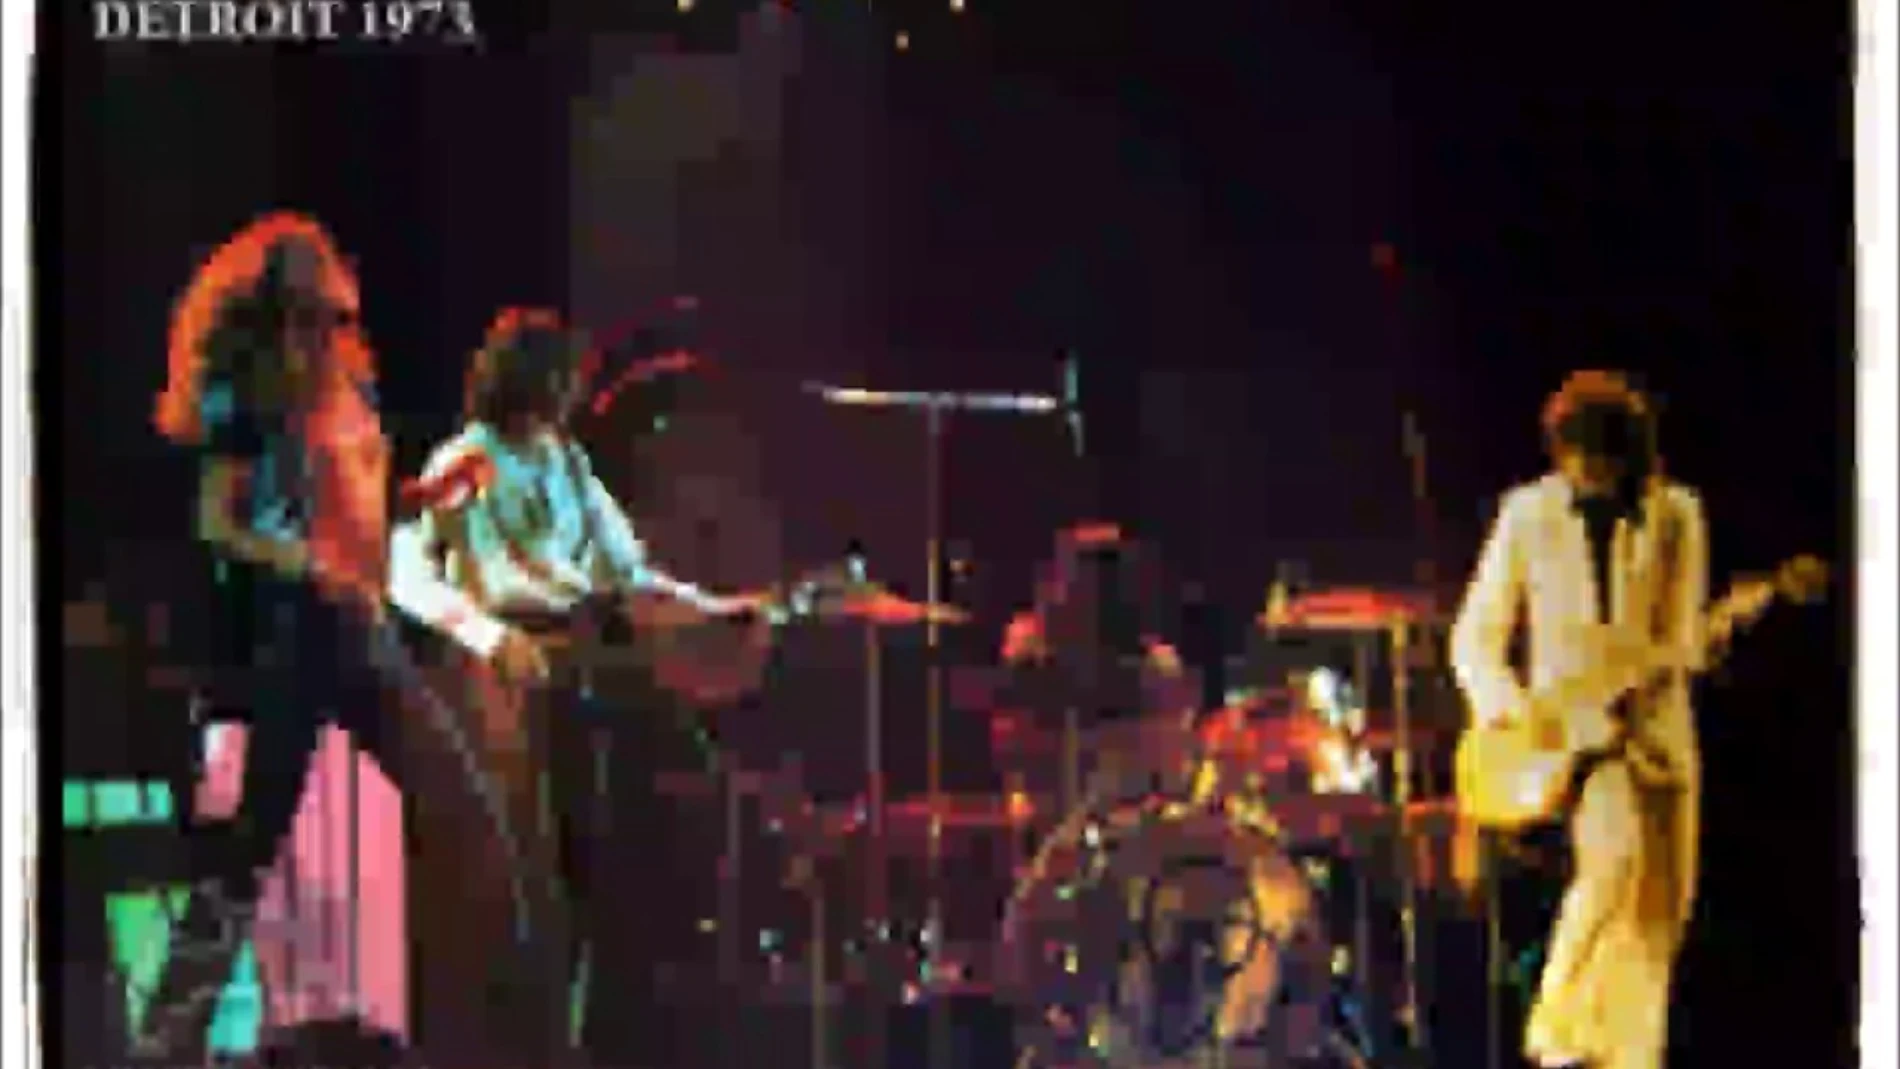 Led Zeppelin, en Detroit, en 1977. La entrada costaba diez dólares